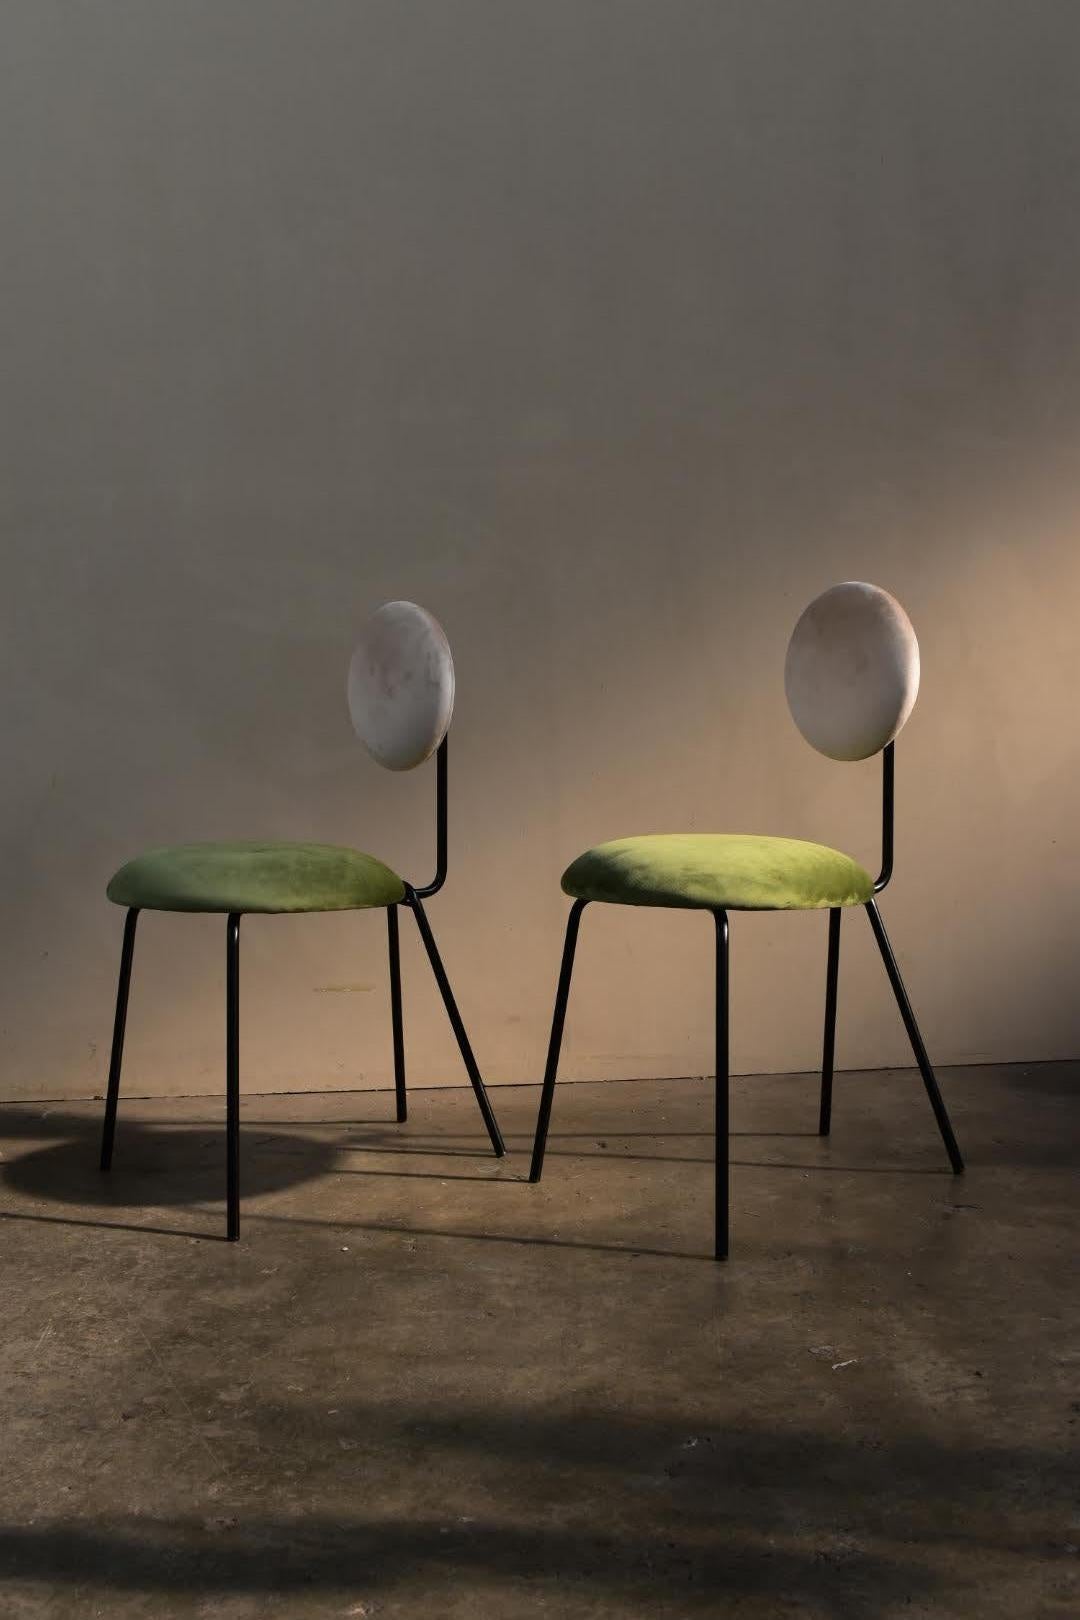 Chaise conçue par le studio Co.Arch à Milan pour equilibri-furniture 
est une chaise aux formes géométriques conçue pour mettre en valeur les surfaces douces. Le design de la fine structure métallique tubulaire met en valeur le velours du revêtement